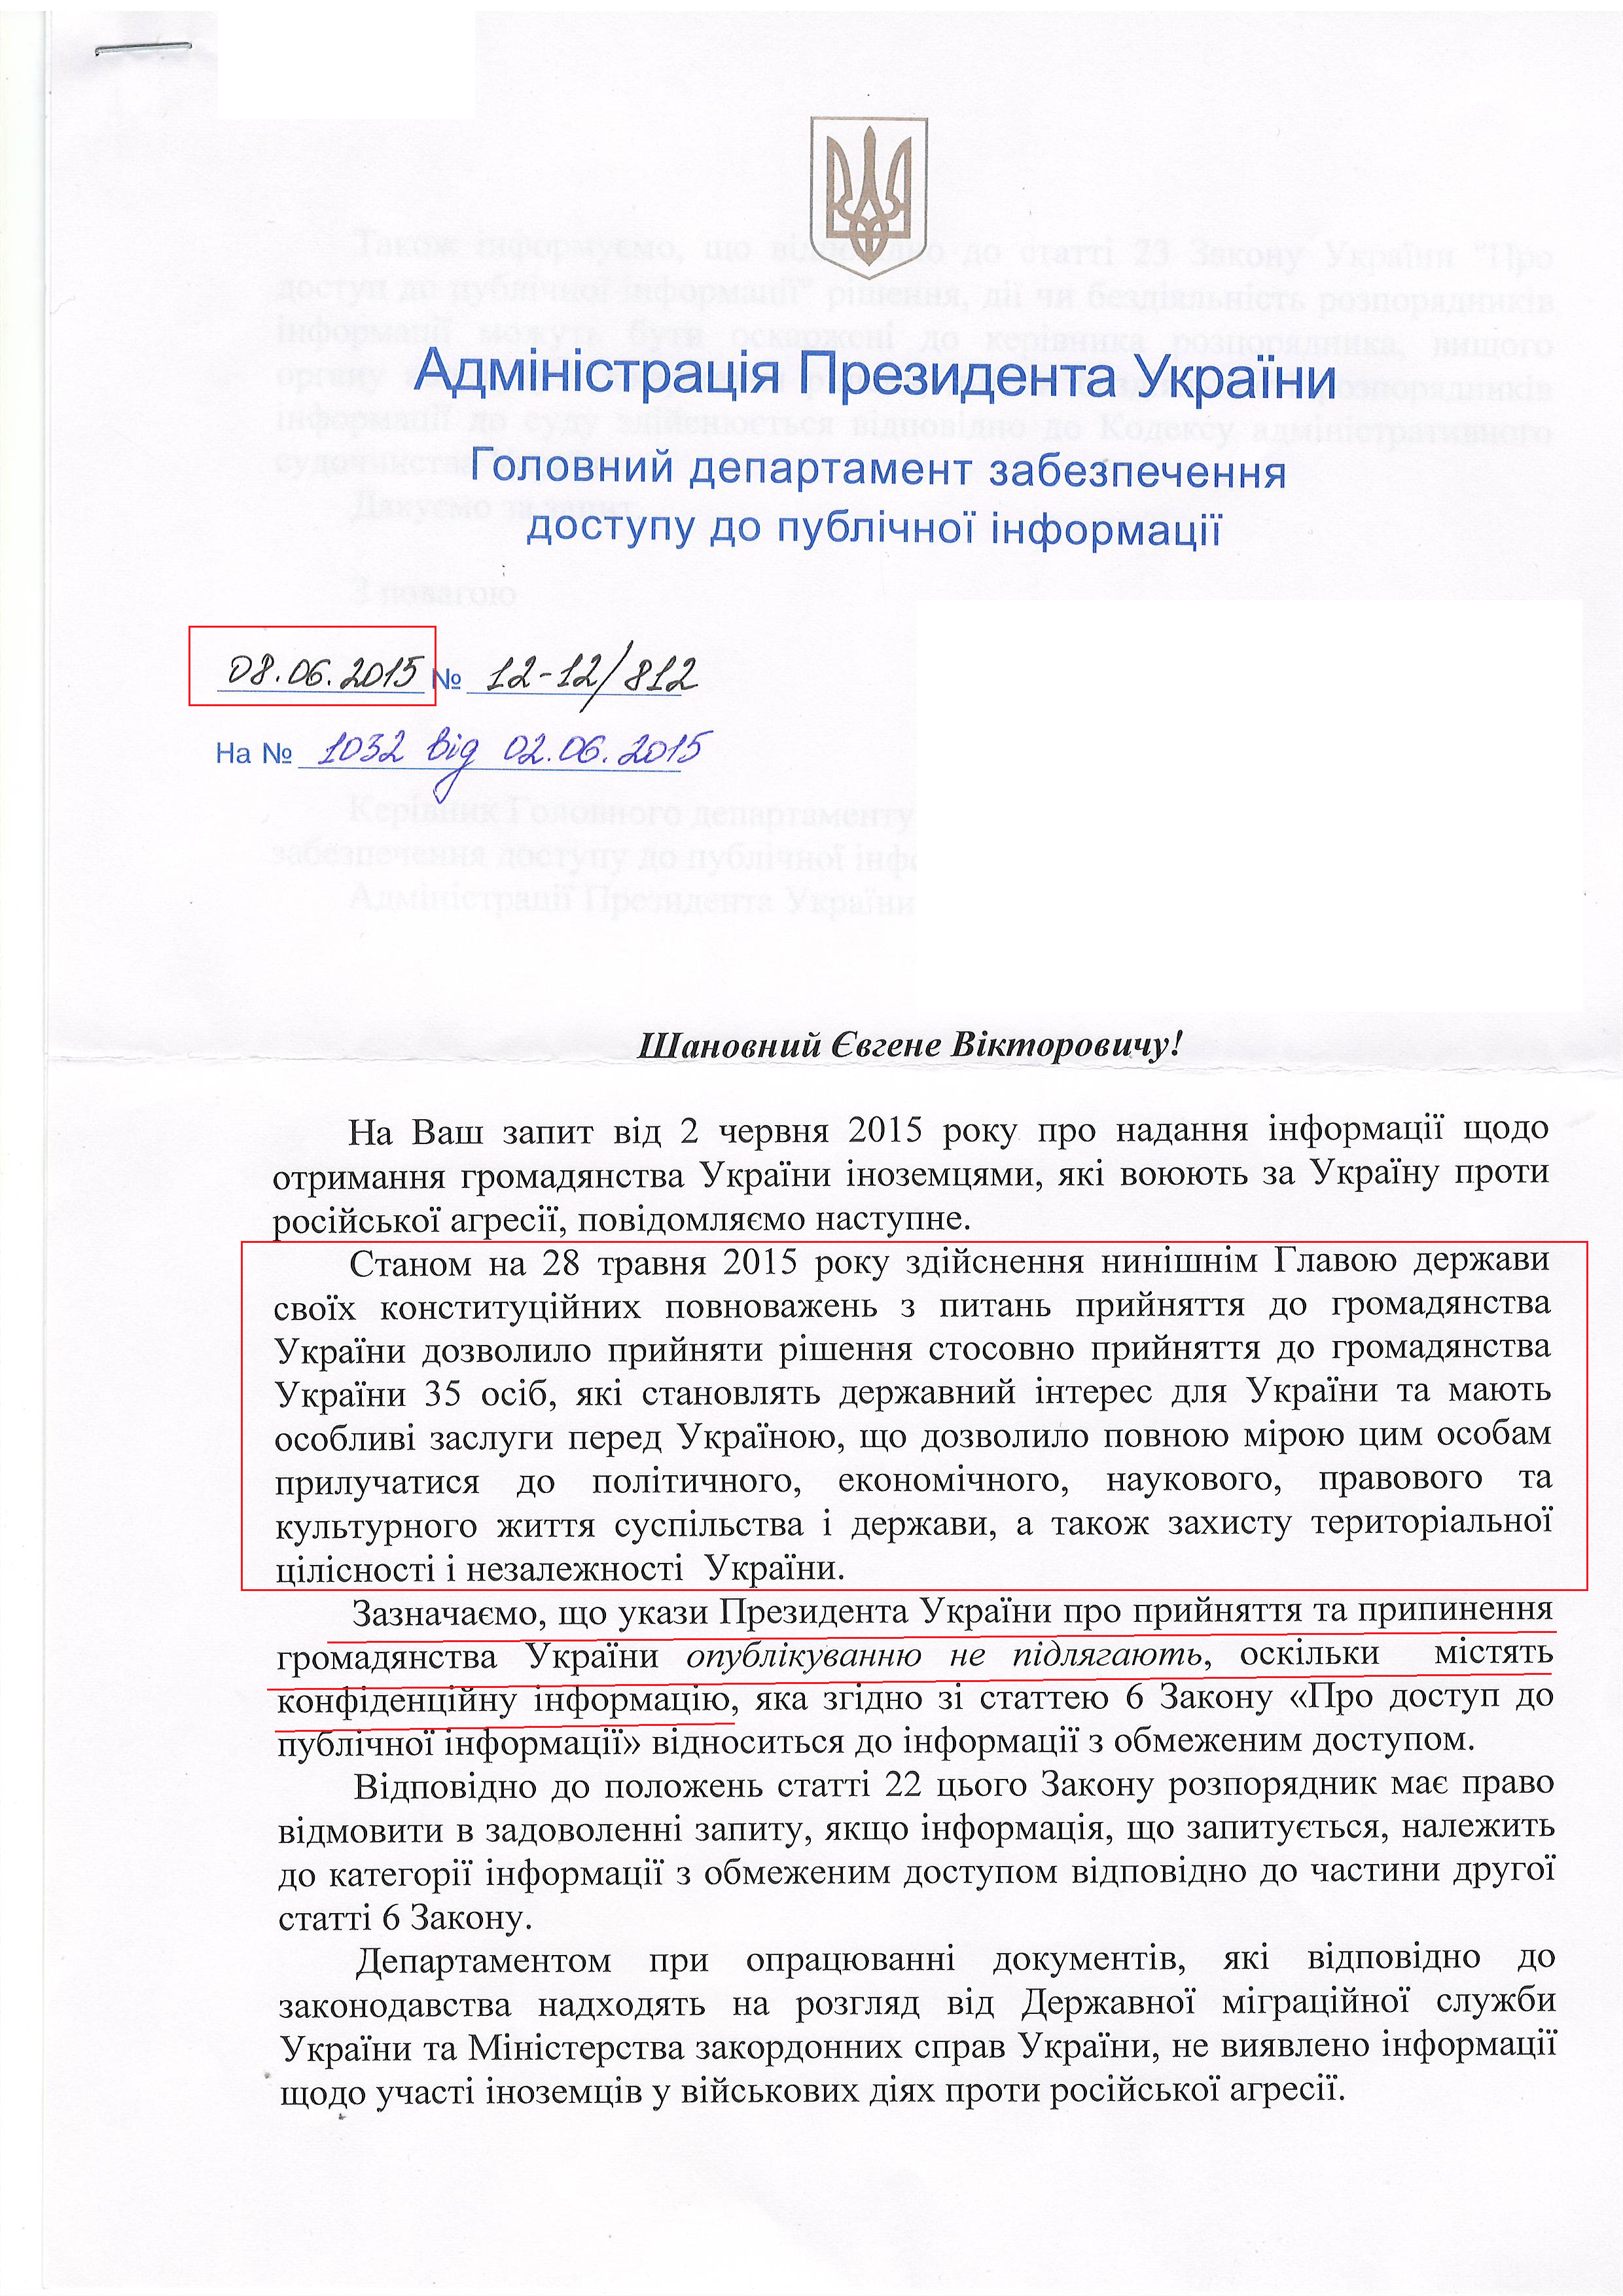 лист Адміністрації Президента України від 8 червня 2015 року